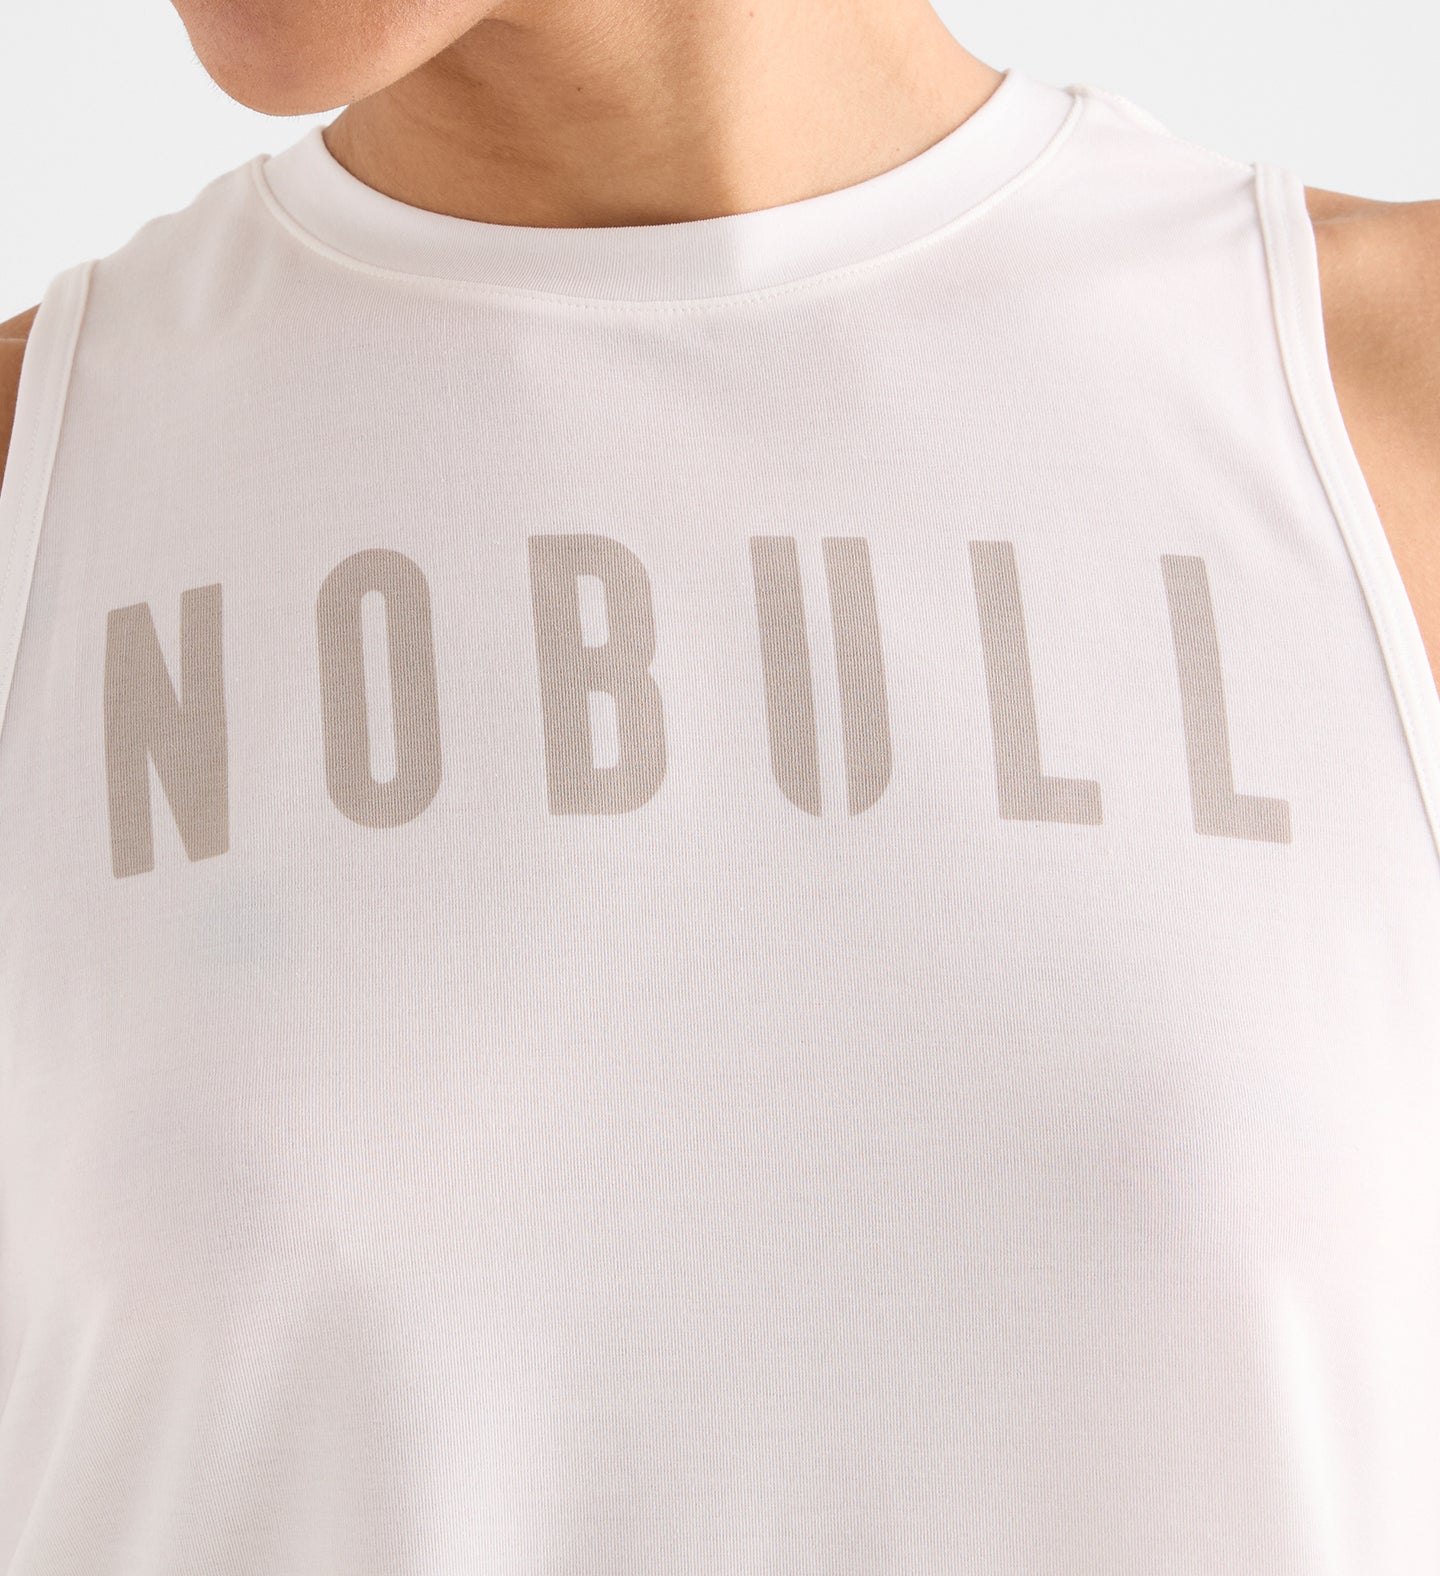 Women's High-Neck Tank – NOBULL